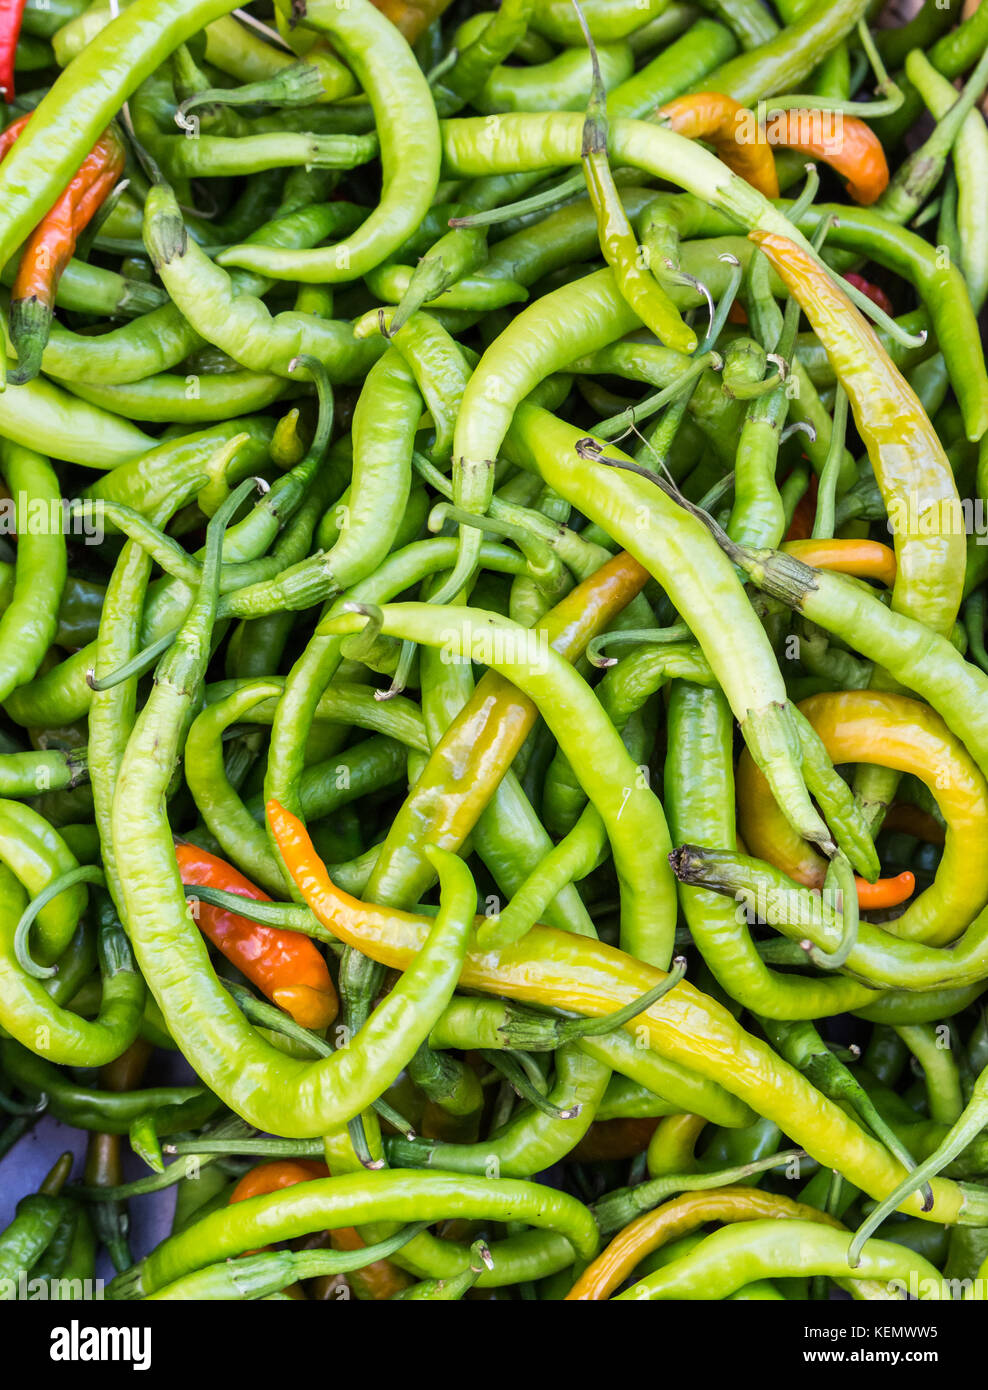 Stapel der Grünen spicy hot chili peppers in einer Box auf dem Markt Stockfoto